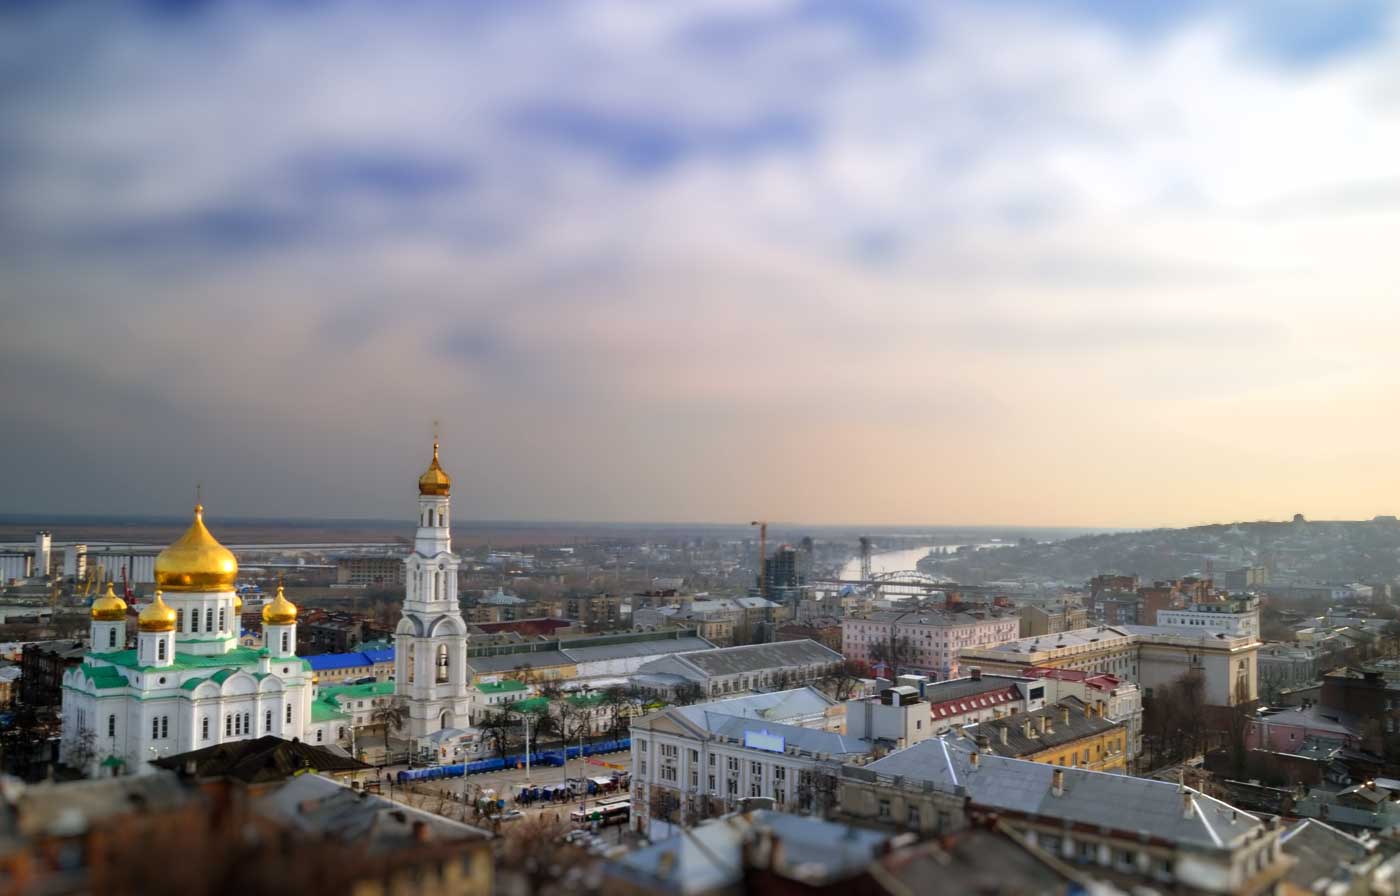 Rostov-on-Don City View Landscape